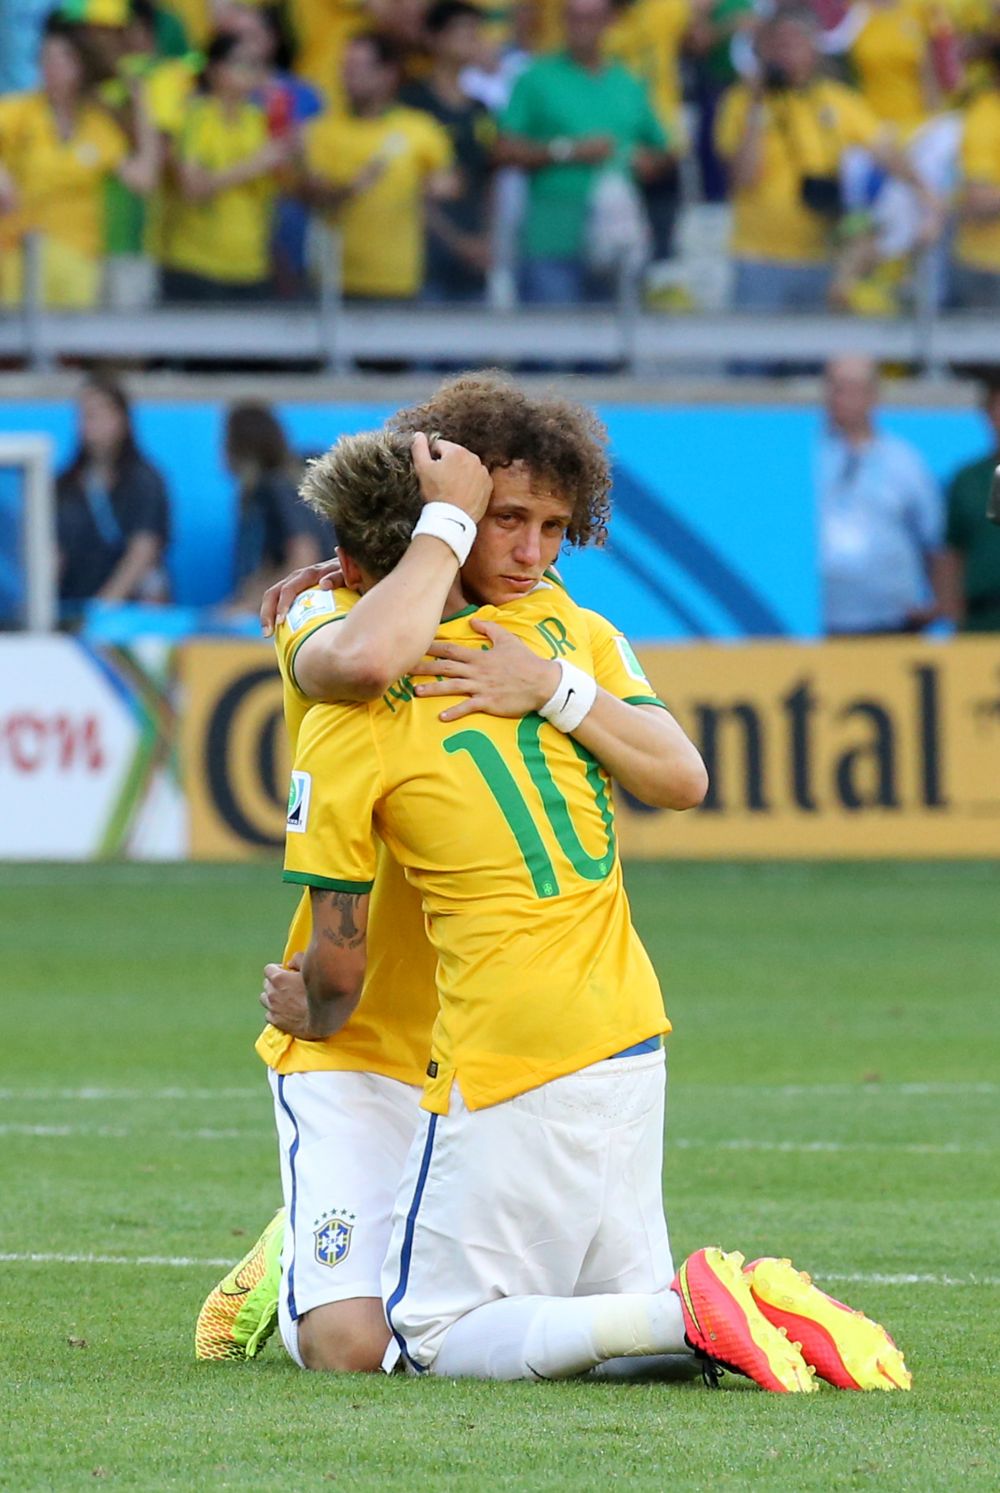 FOTO CUTREMURATOR! Neymar a cedat nervos! Cu dureri, a cazut in genunchi si a plans ca un copil! Imaginile nevazute la TV_2